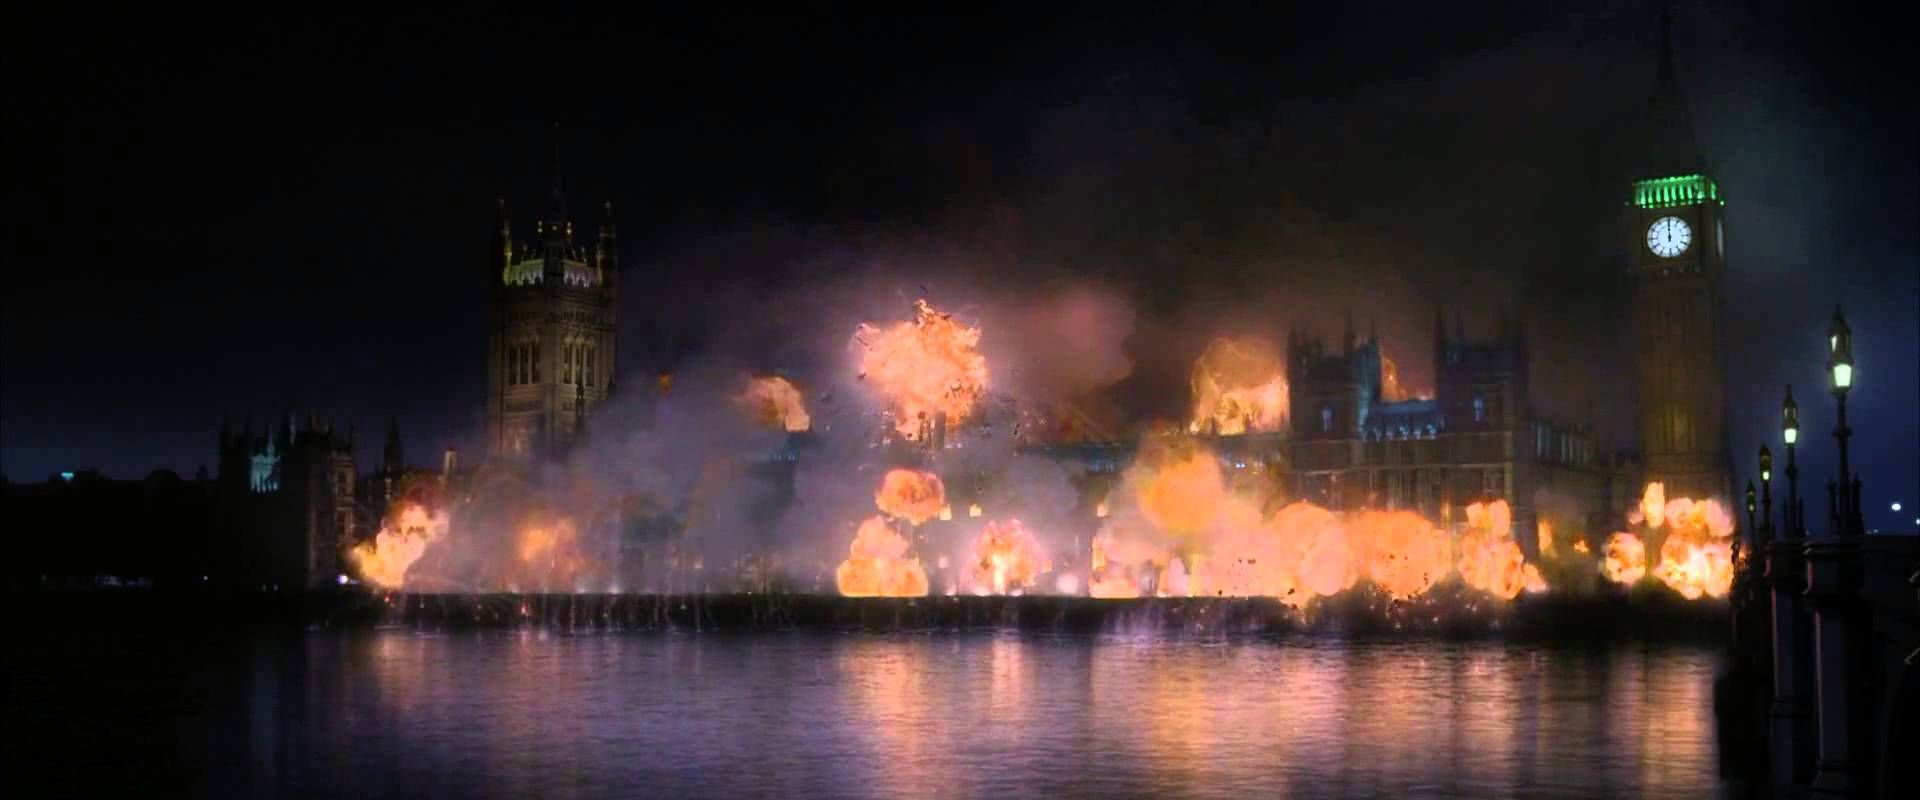 Whitehall Area Exploding in V for Vendetta